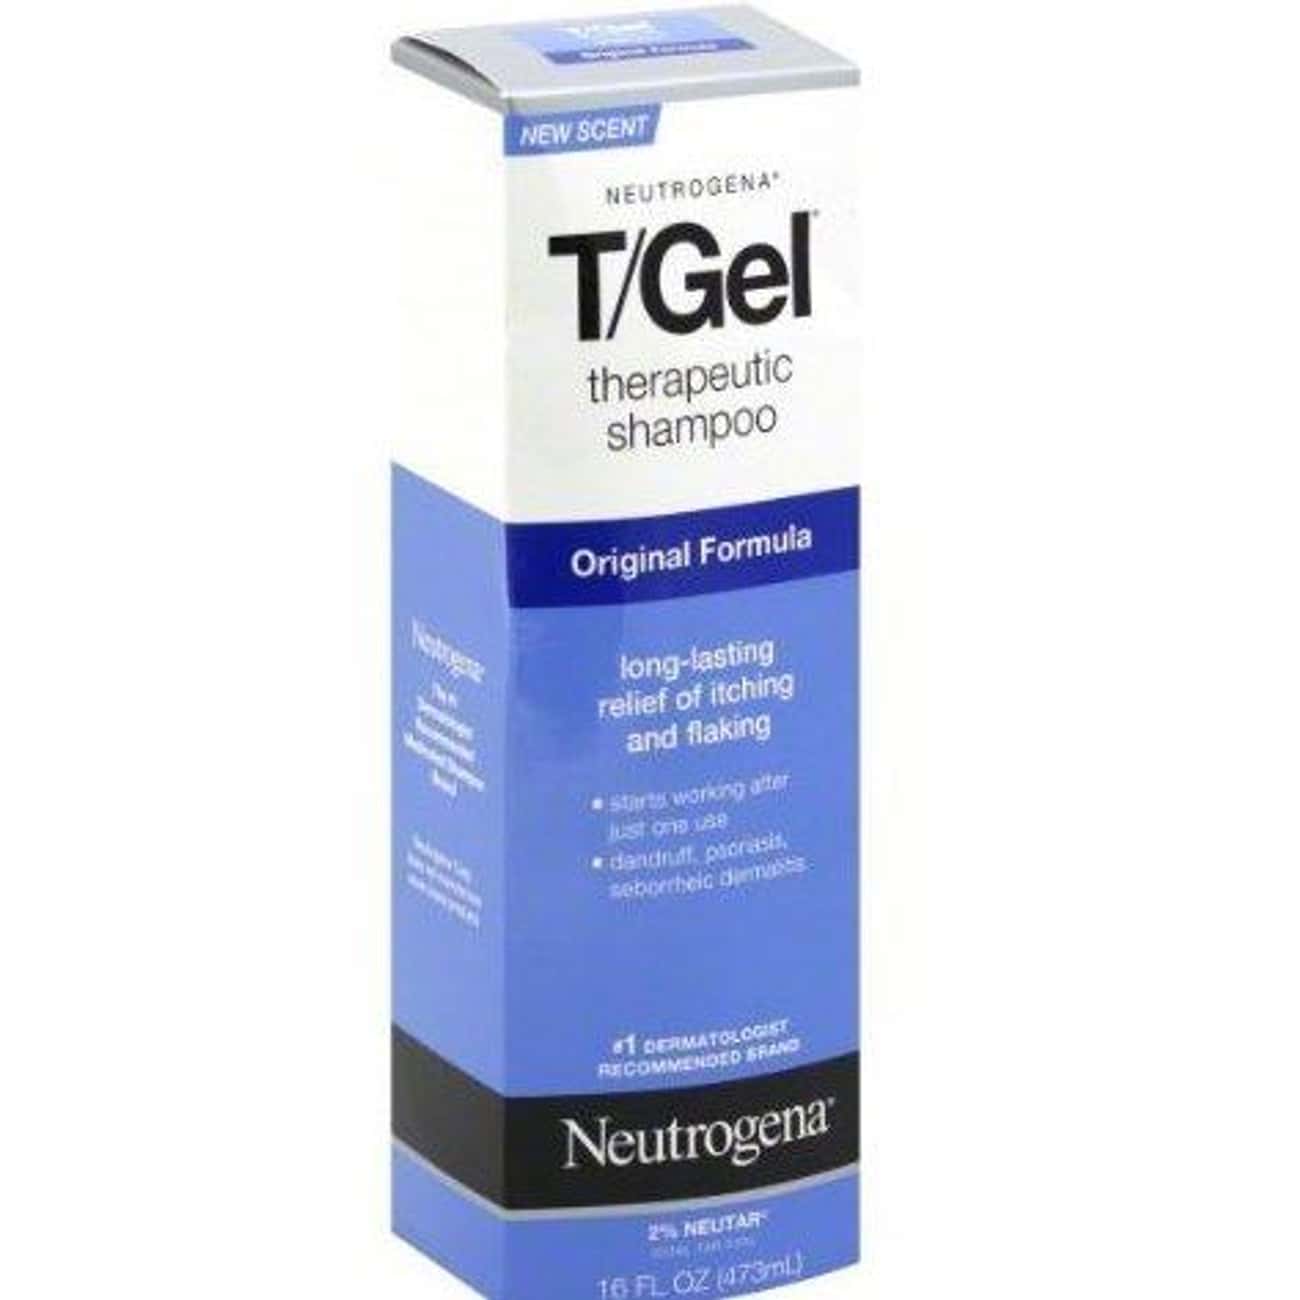 Neutrogena T/Gel Original Formula Shampoo